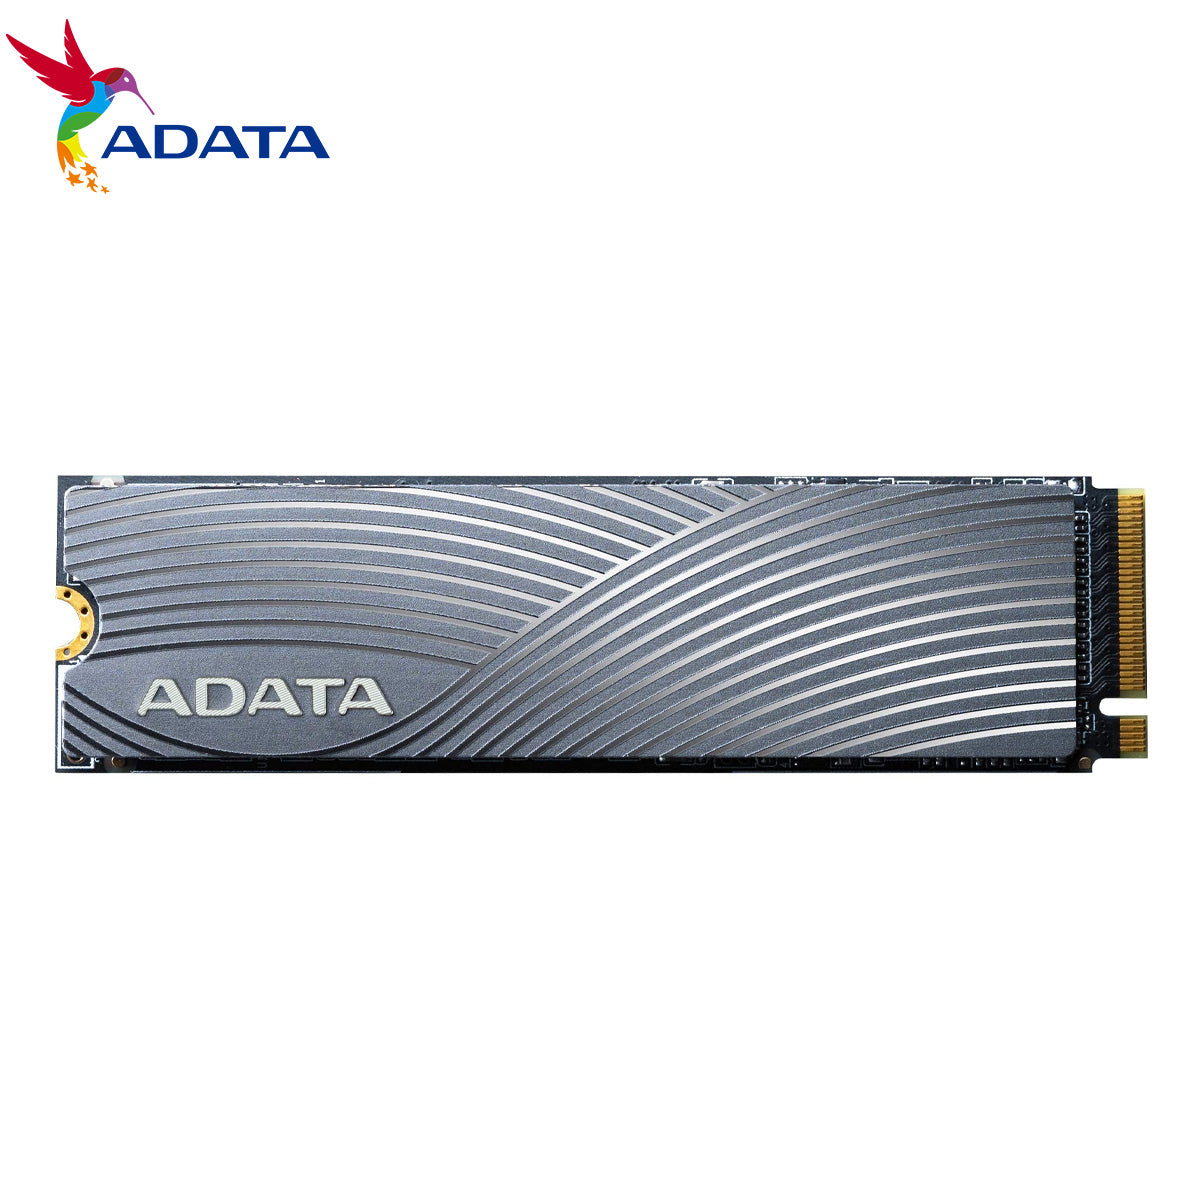 ADATA SWORDFISH 500GB COLOR BOX M2